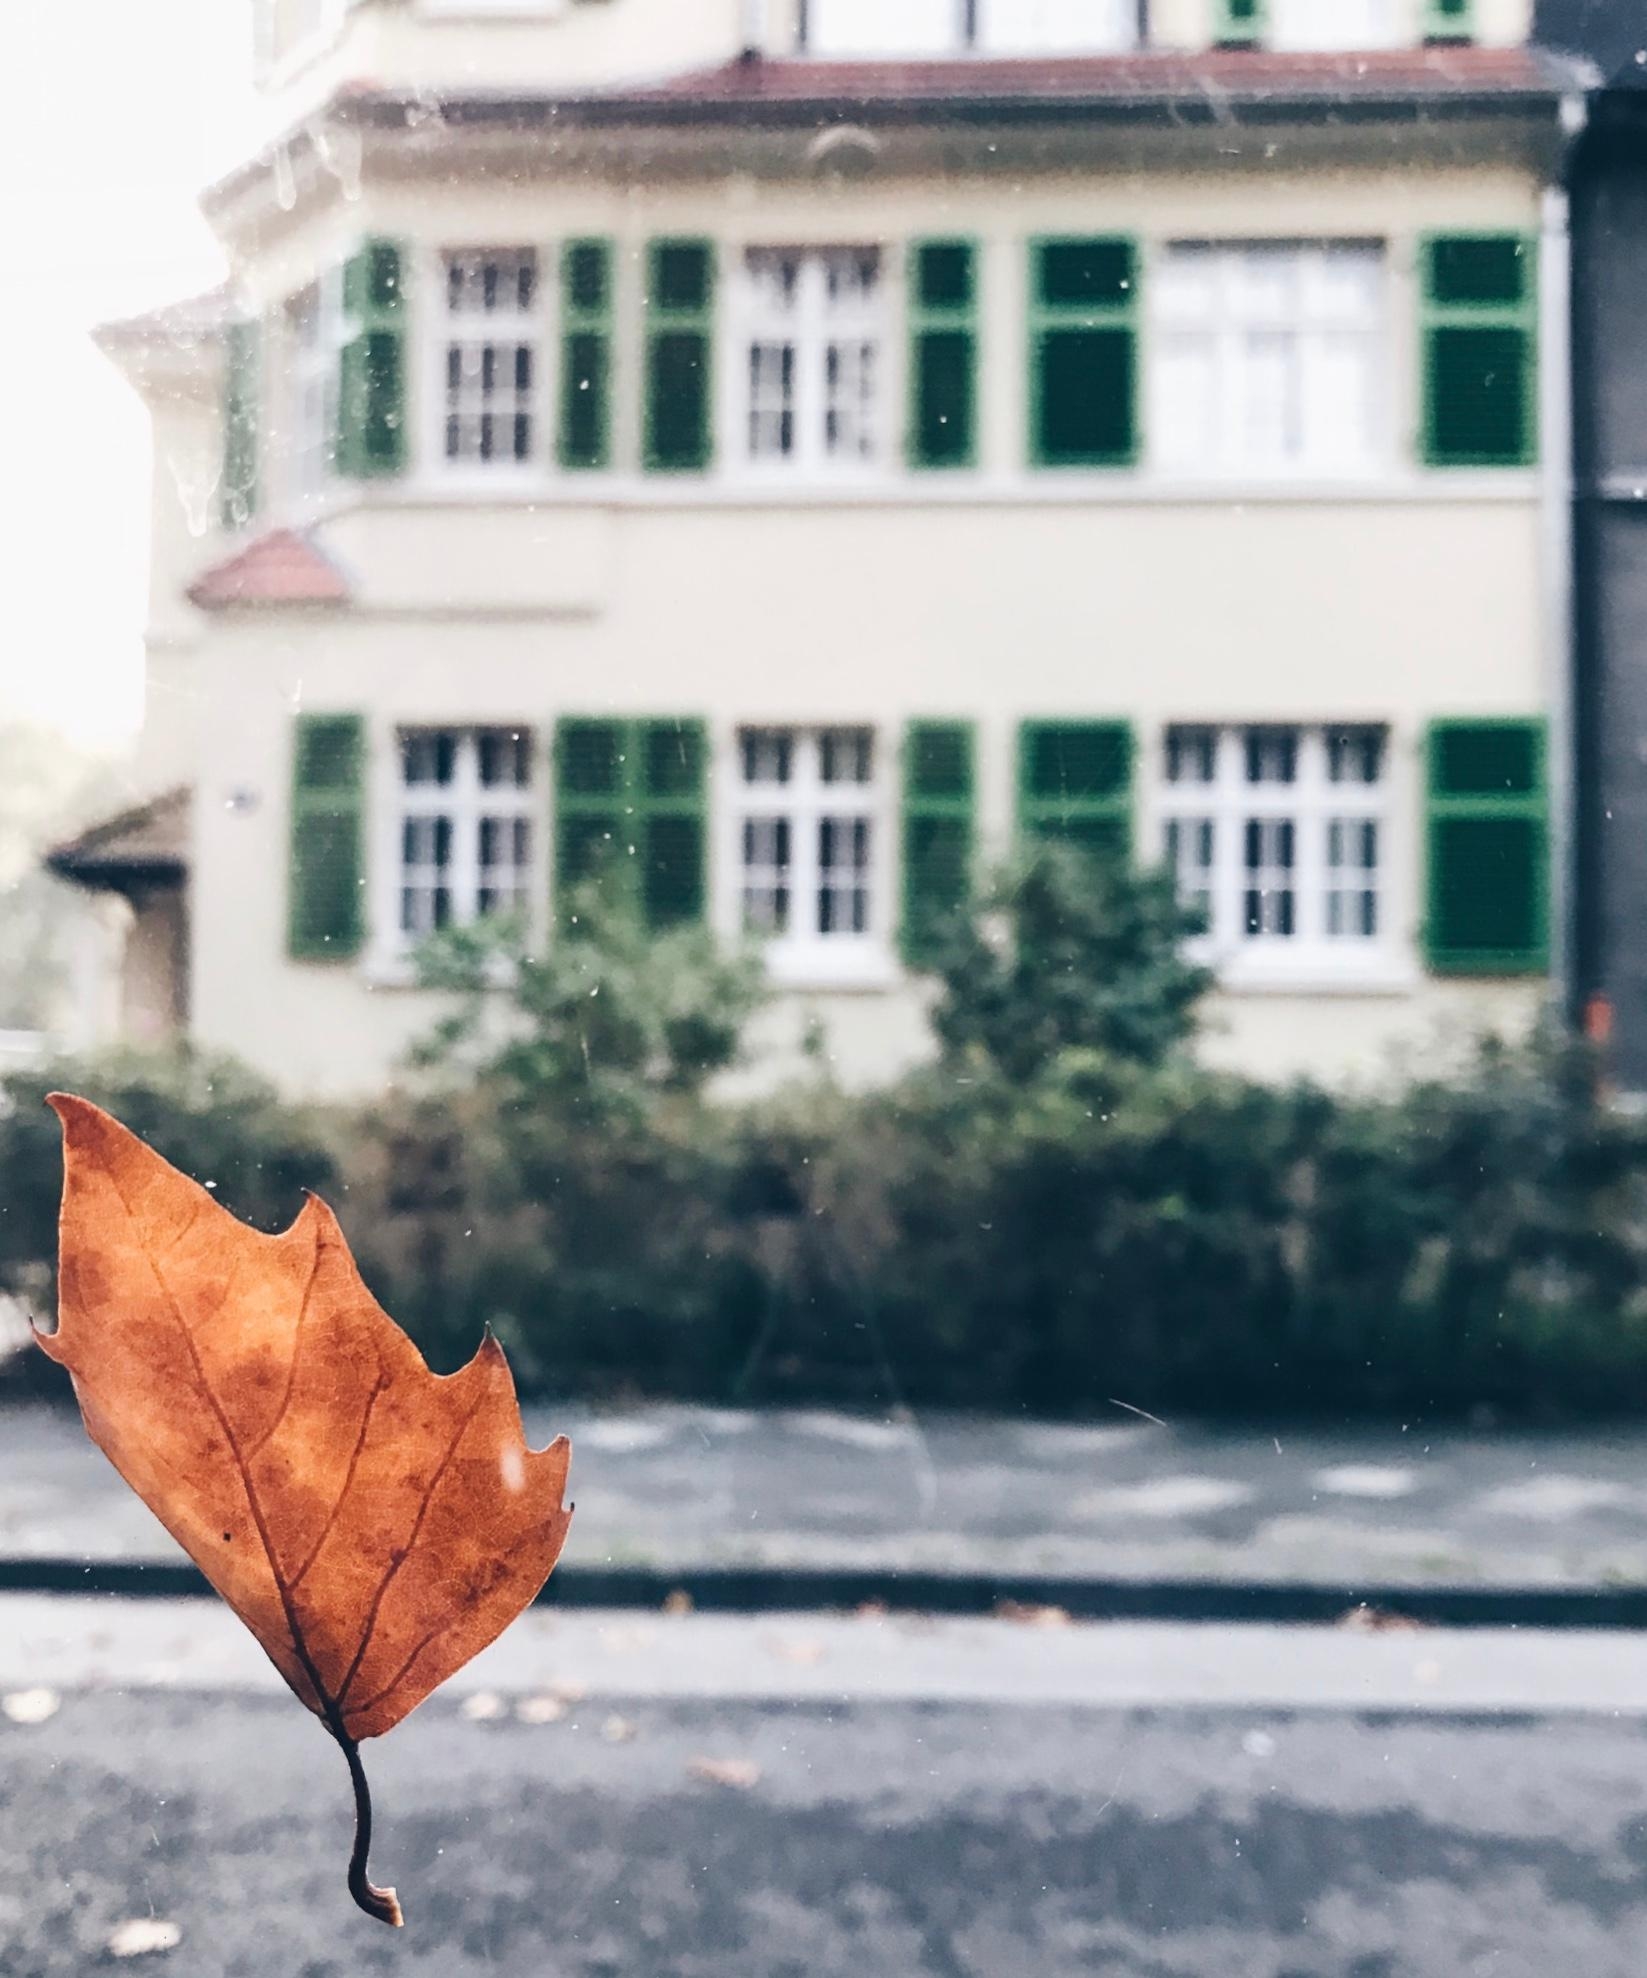 Schnappschuss aus dem Auto😍🍂
#Herbst #Home #altbauliebe #couchliebt #wohnen #interior #altbau 